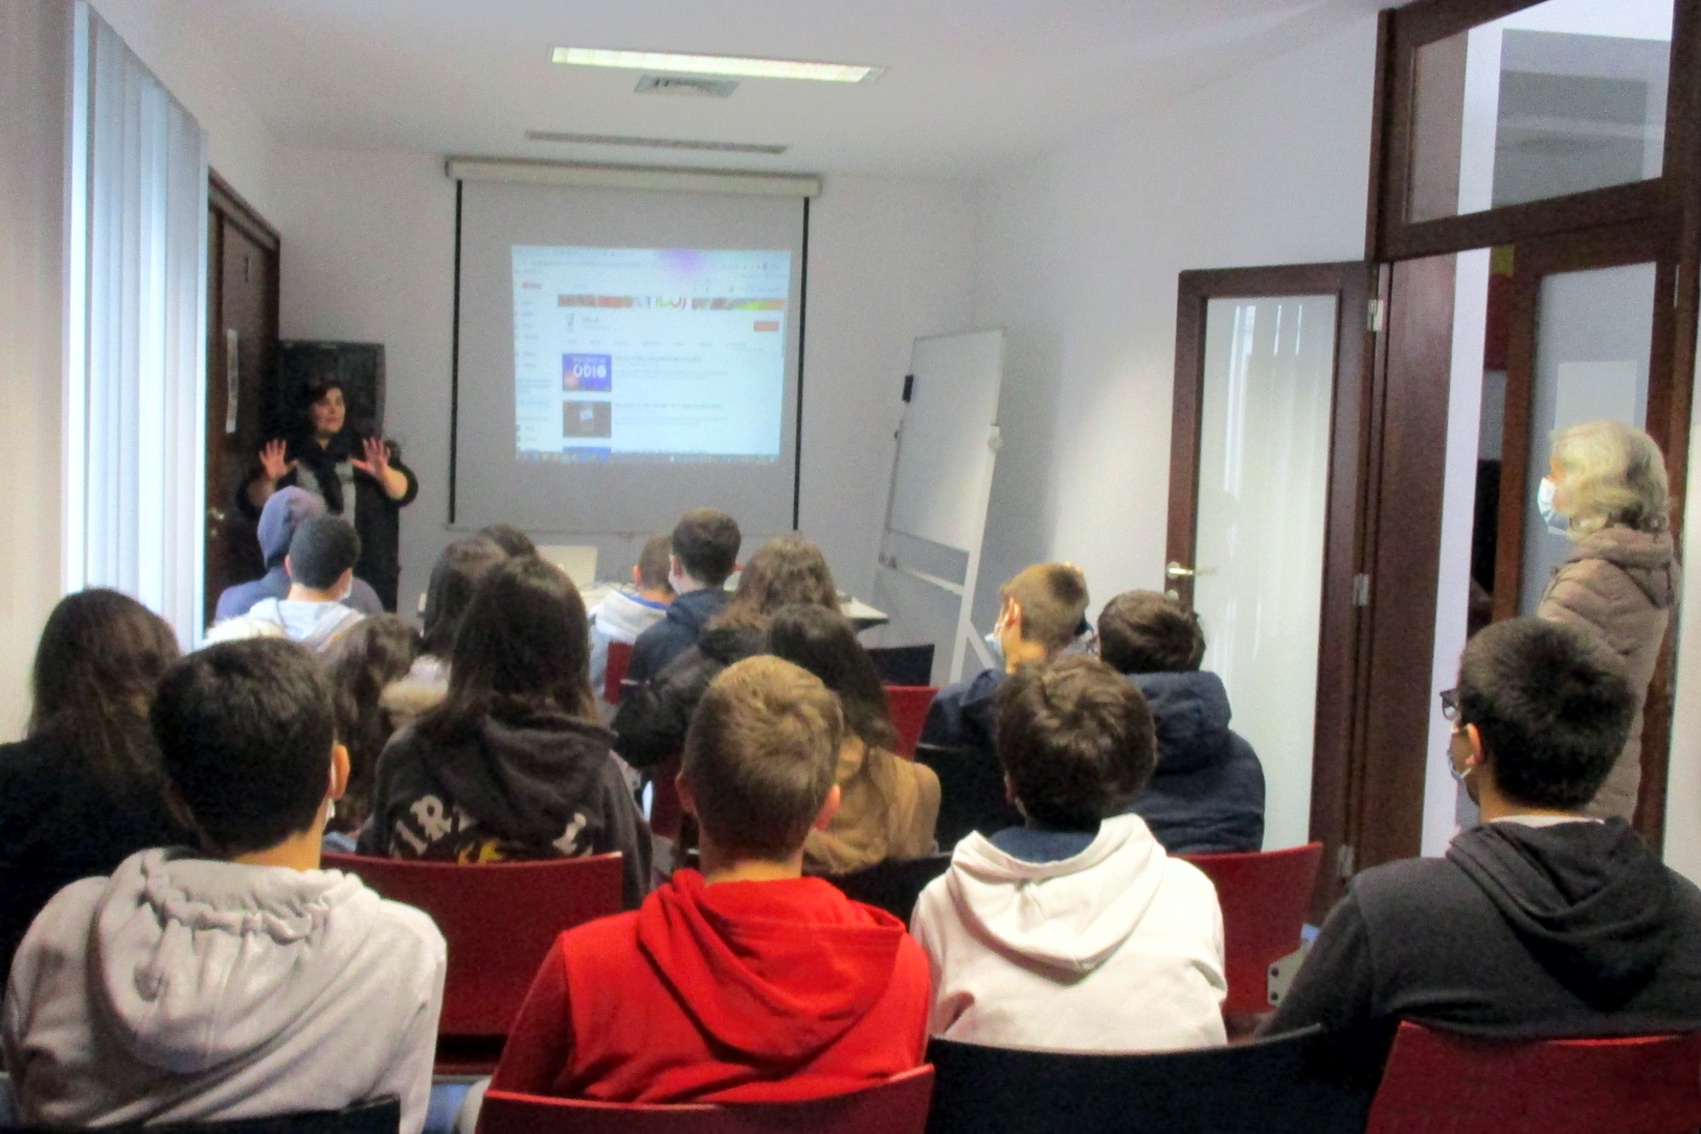 Técnica do IPDJ de Évora, com os alunos e dois professores da Escola Básica Conde de Vilalva, na sala de formação do IPDJ de Évora.